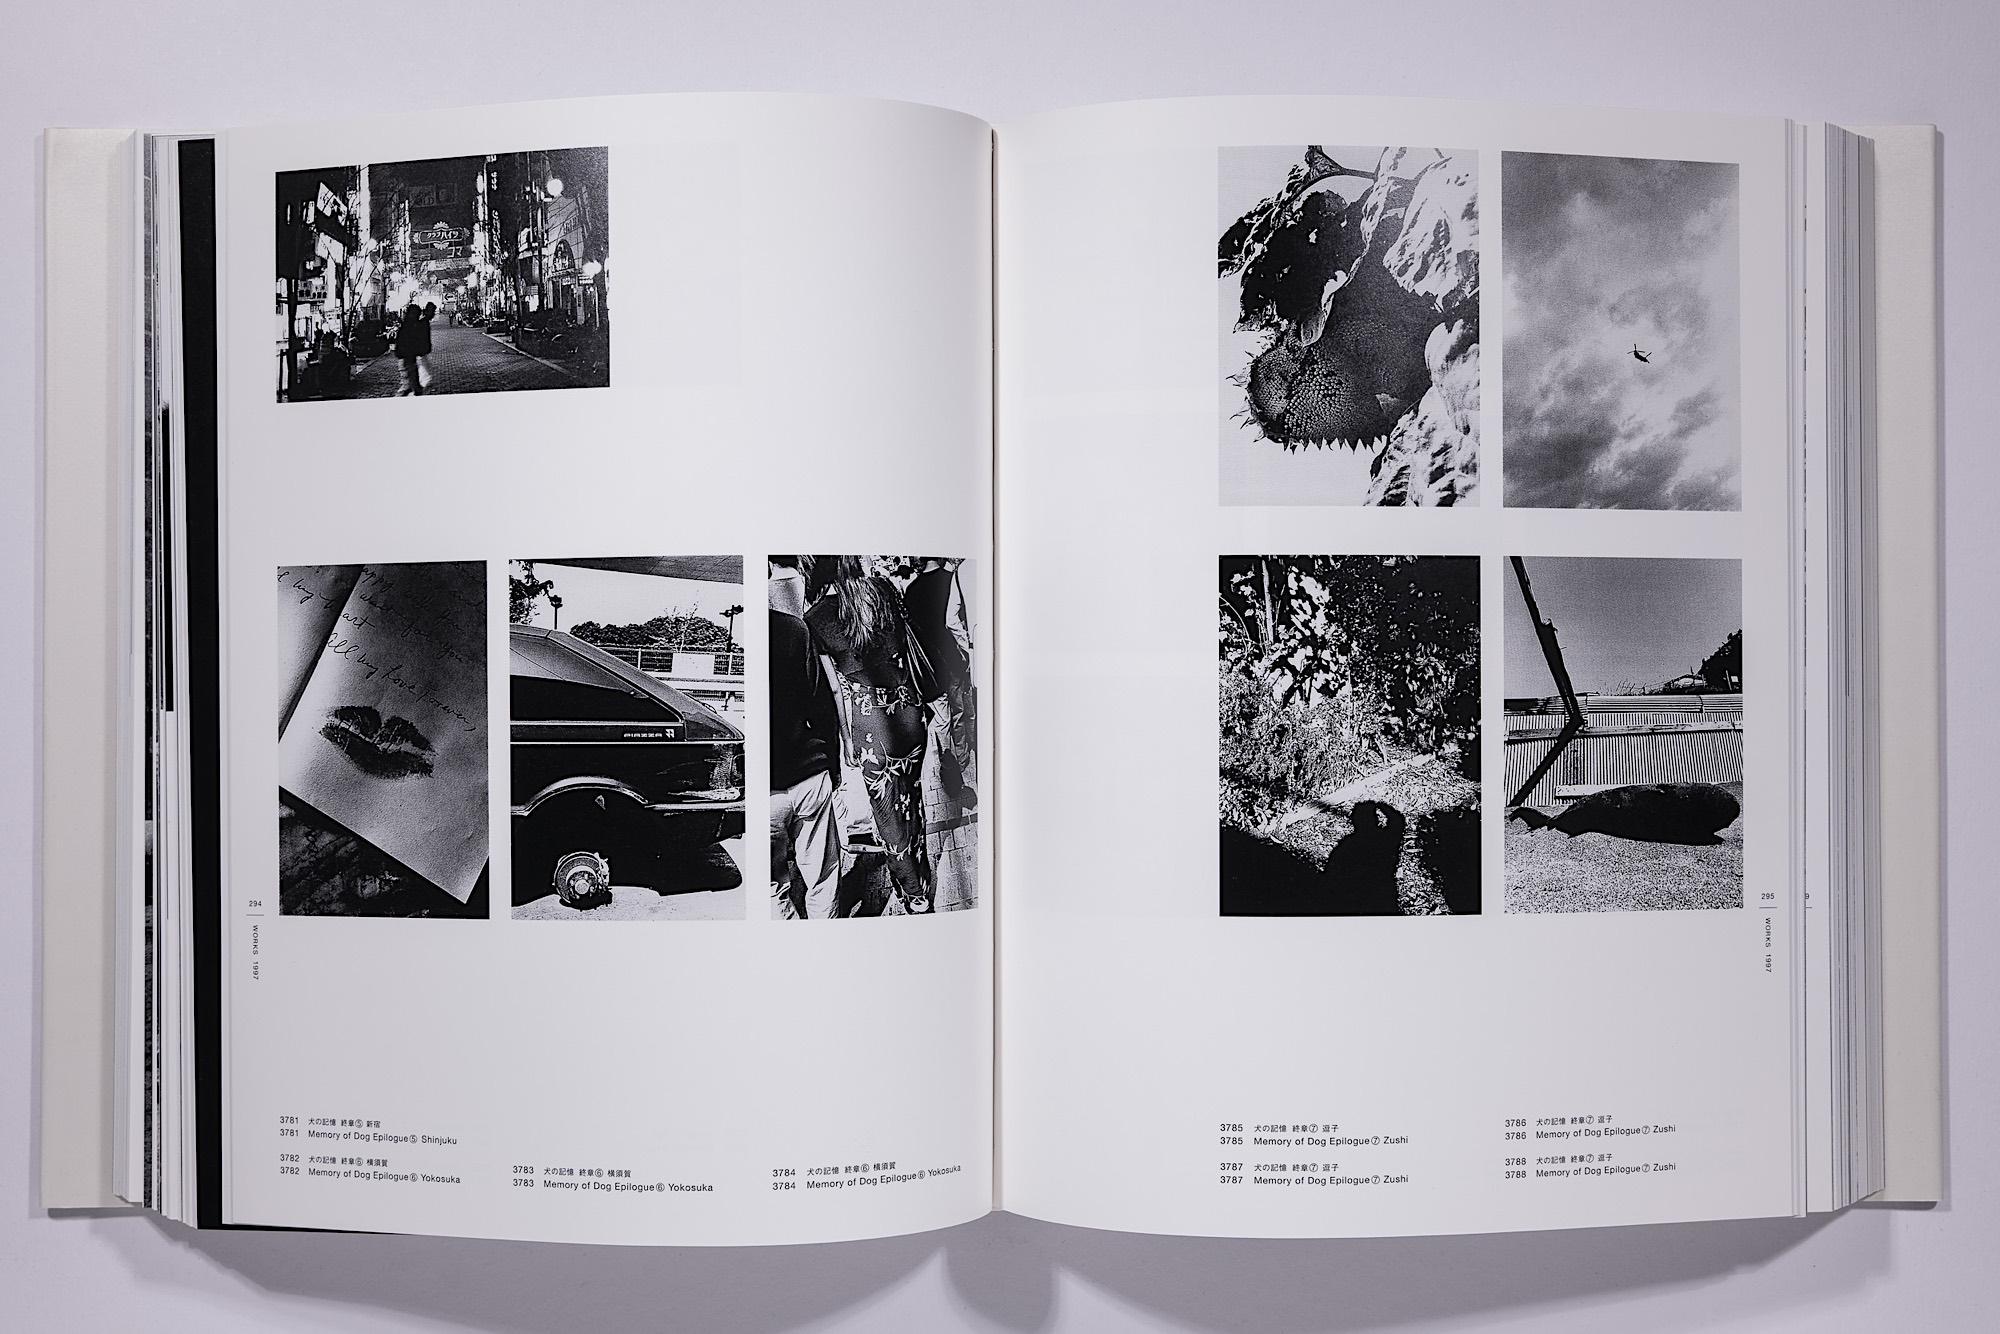 Daido Moriyama - The Complete Works of Daido Moriyama Image 34